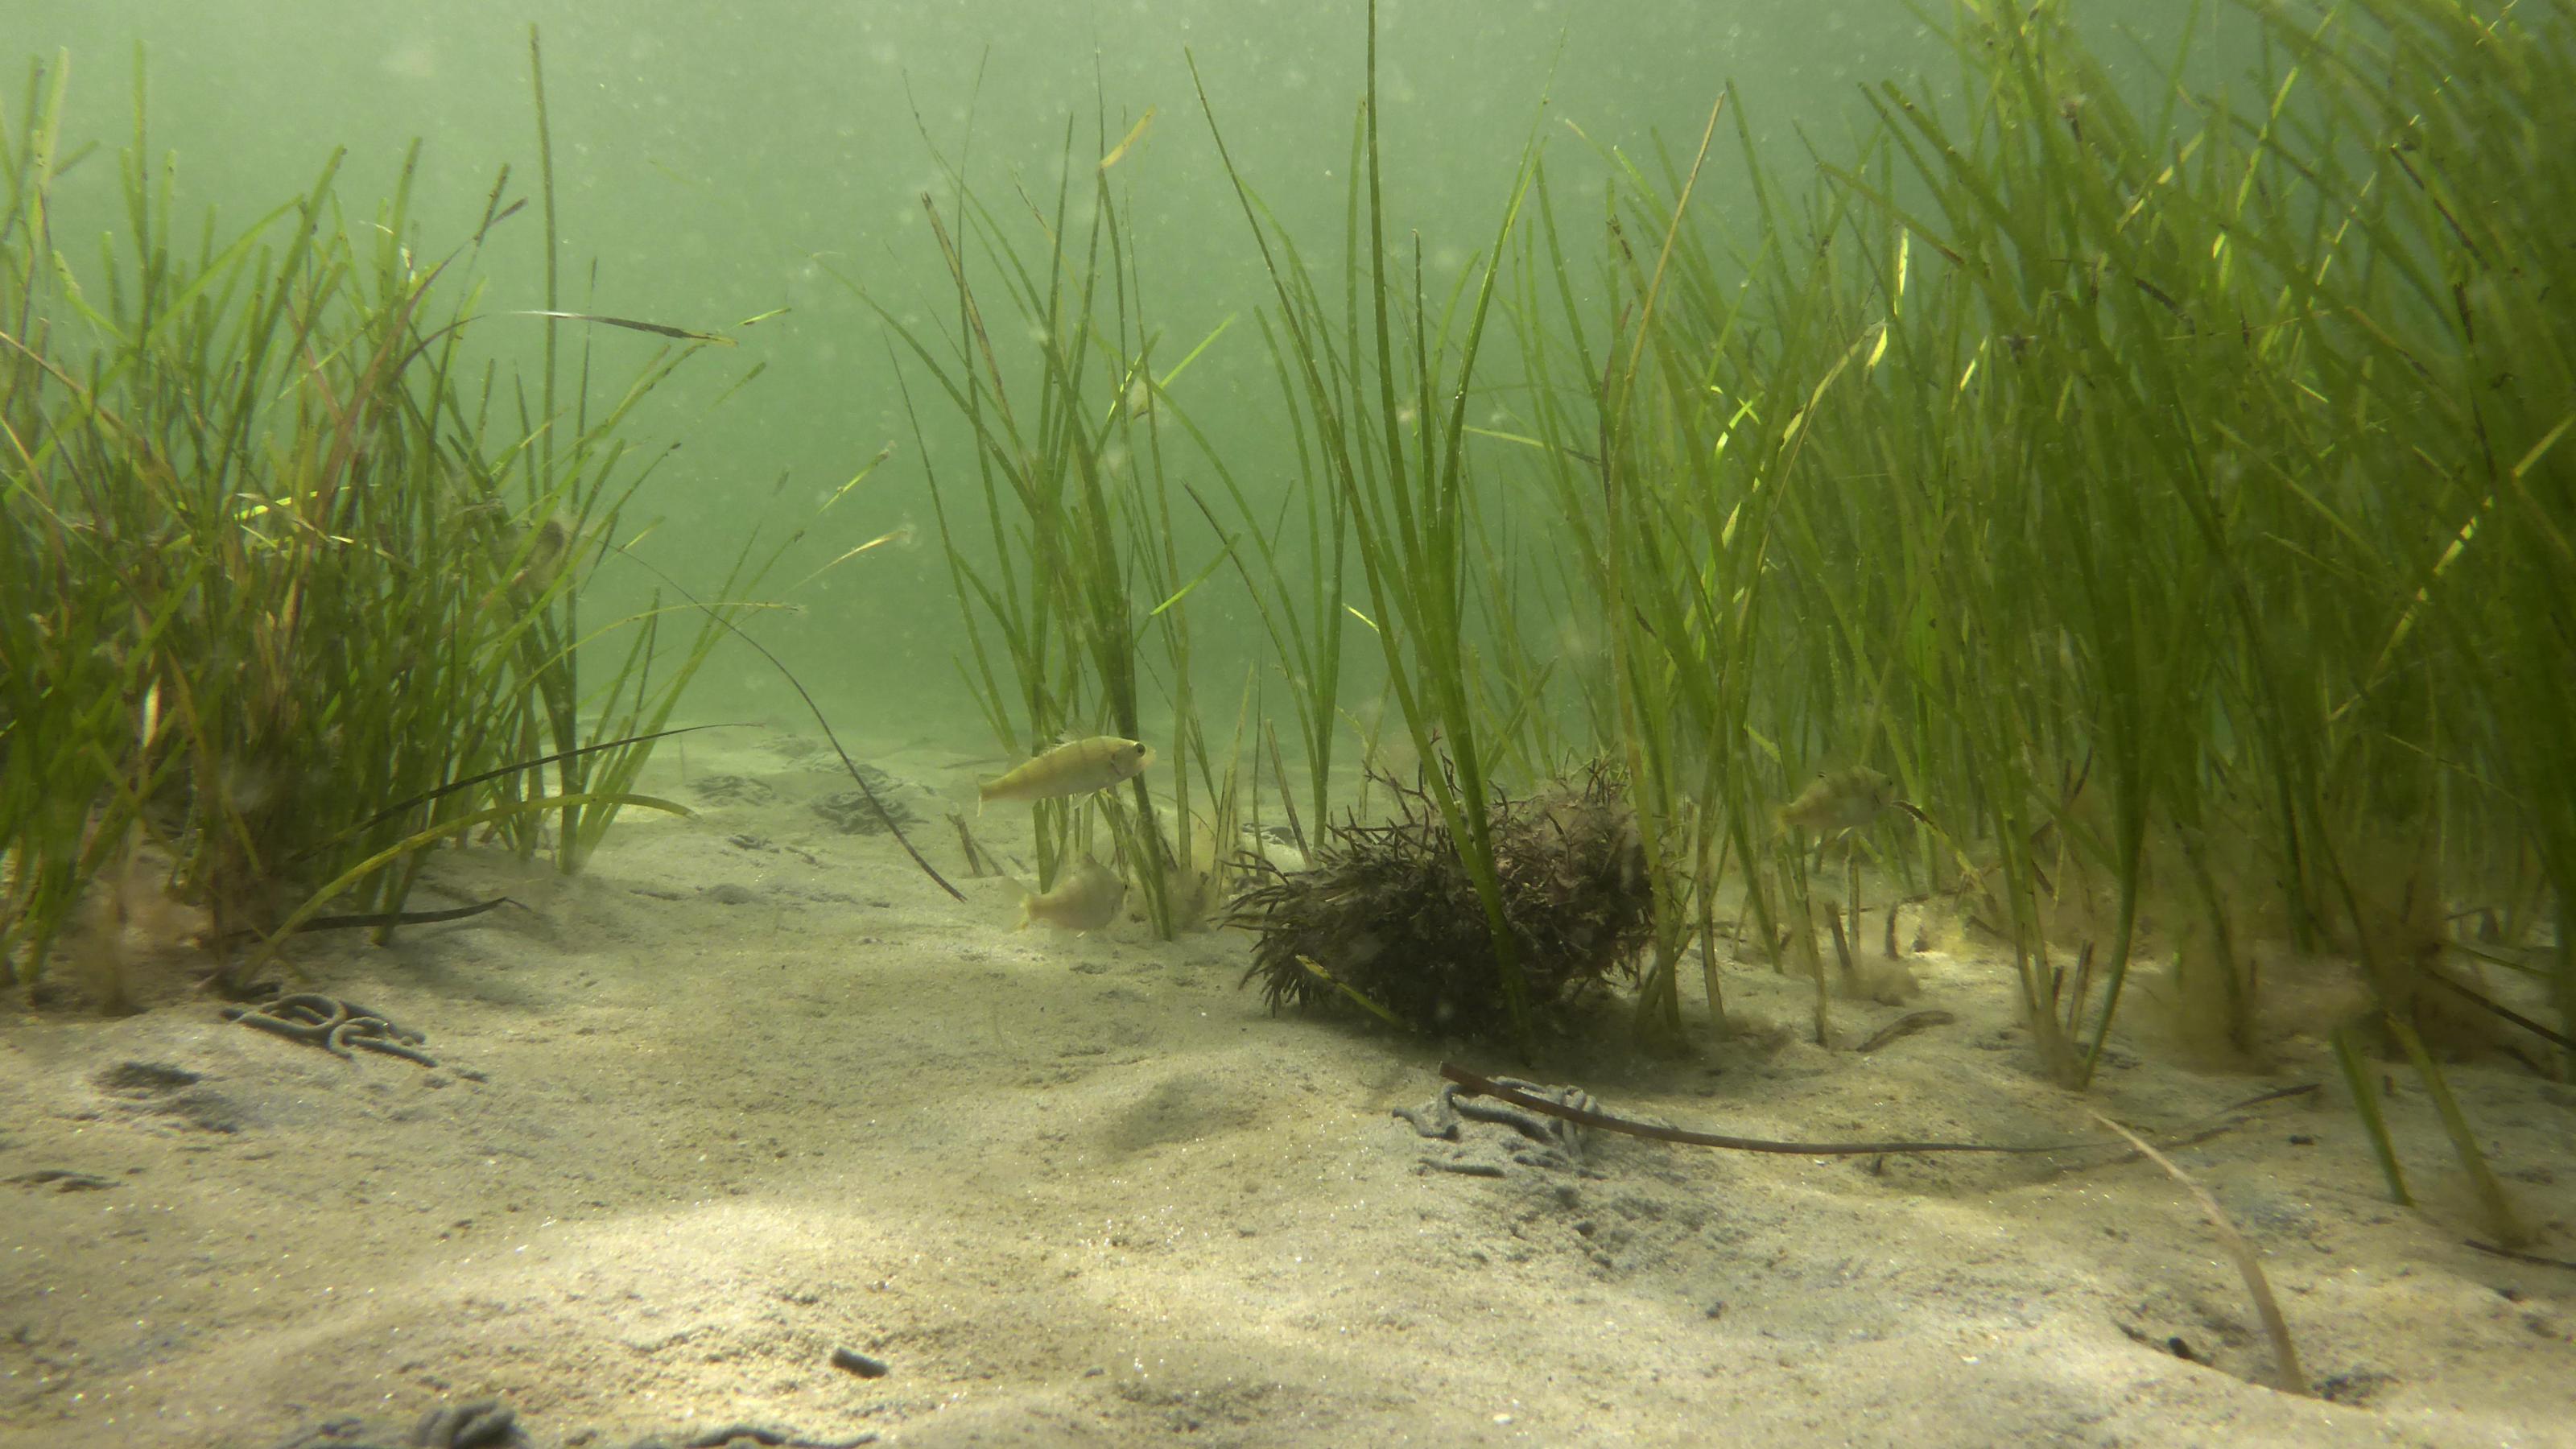 Seegraswiese in trübem, flachem Wasser mit einigen kleinen Fischen